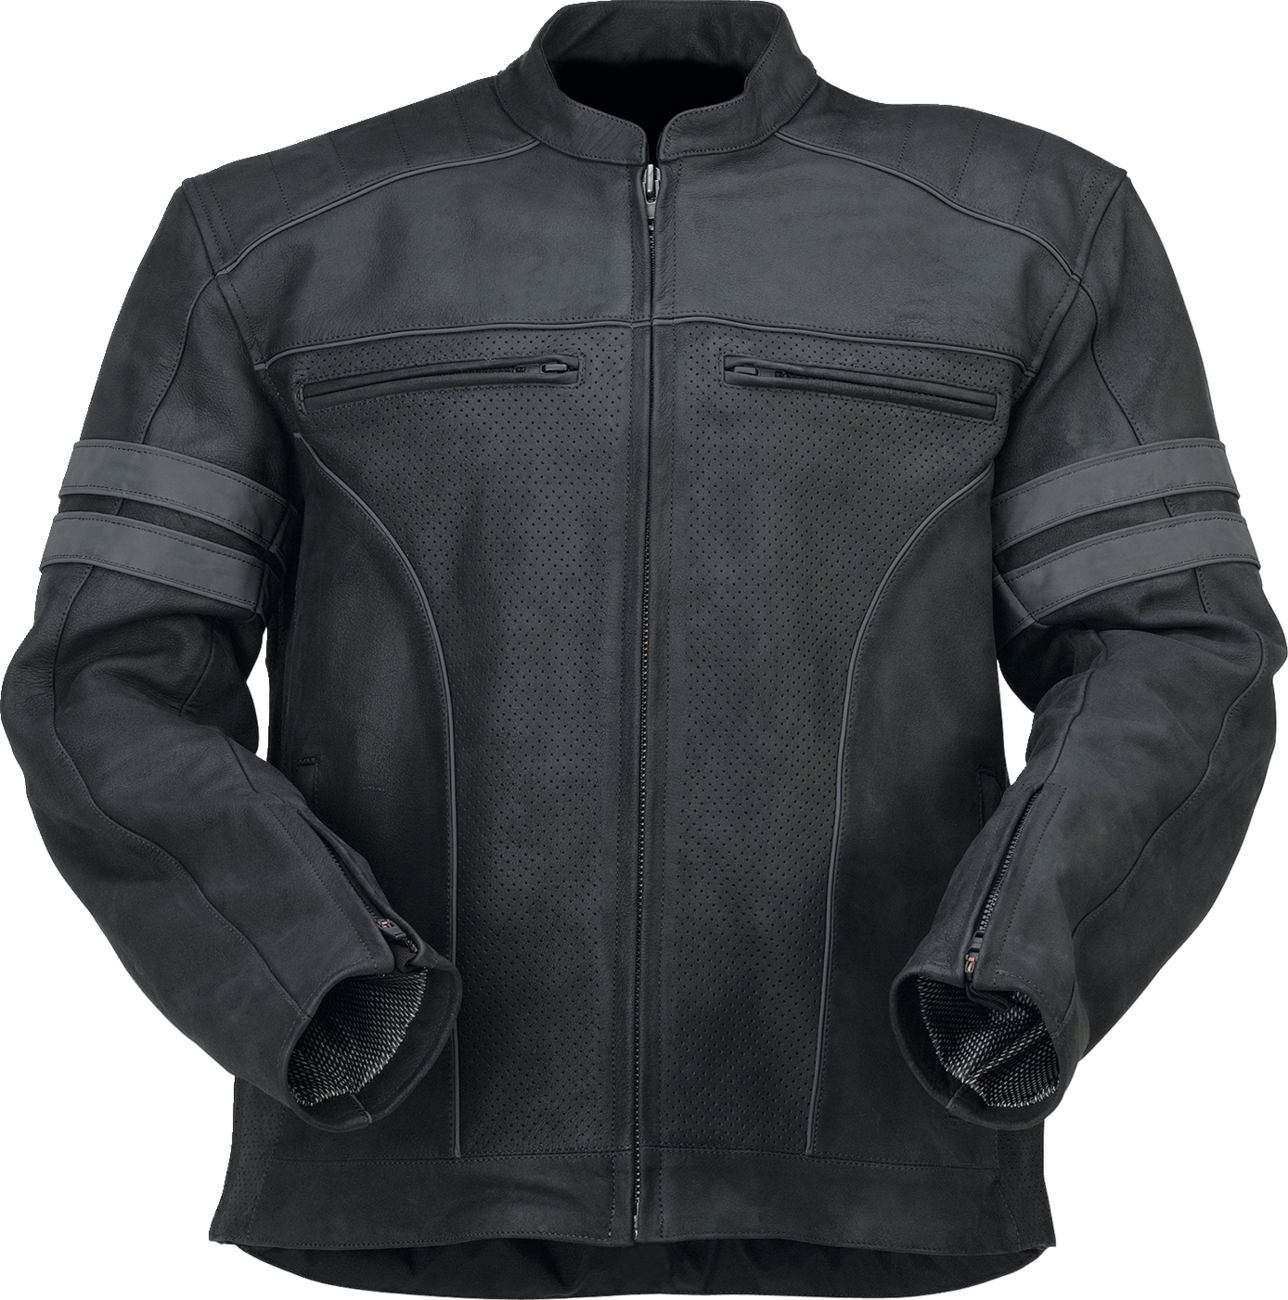 Z1R Remedy Leather Jacket - Black - XL 2810-3892